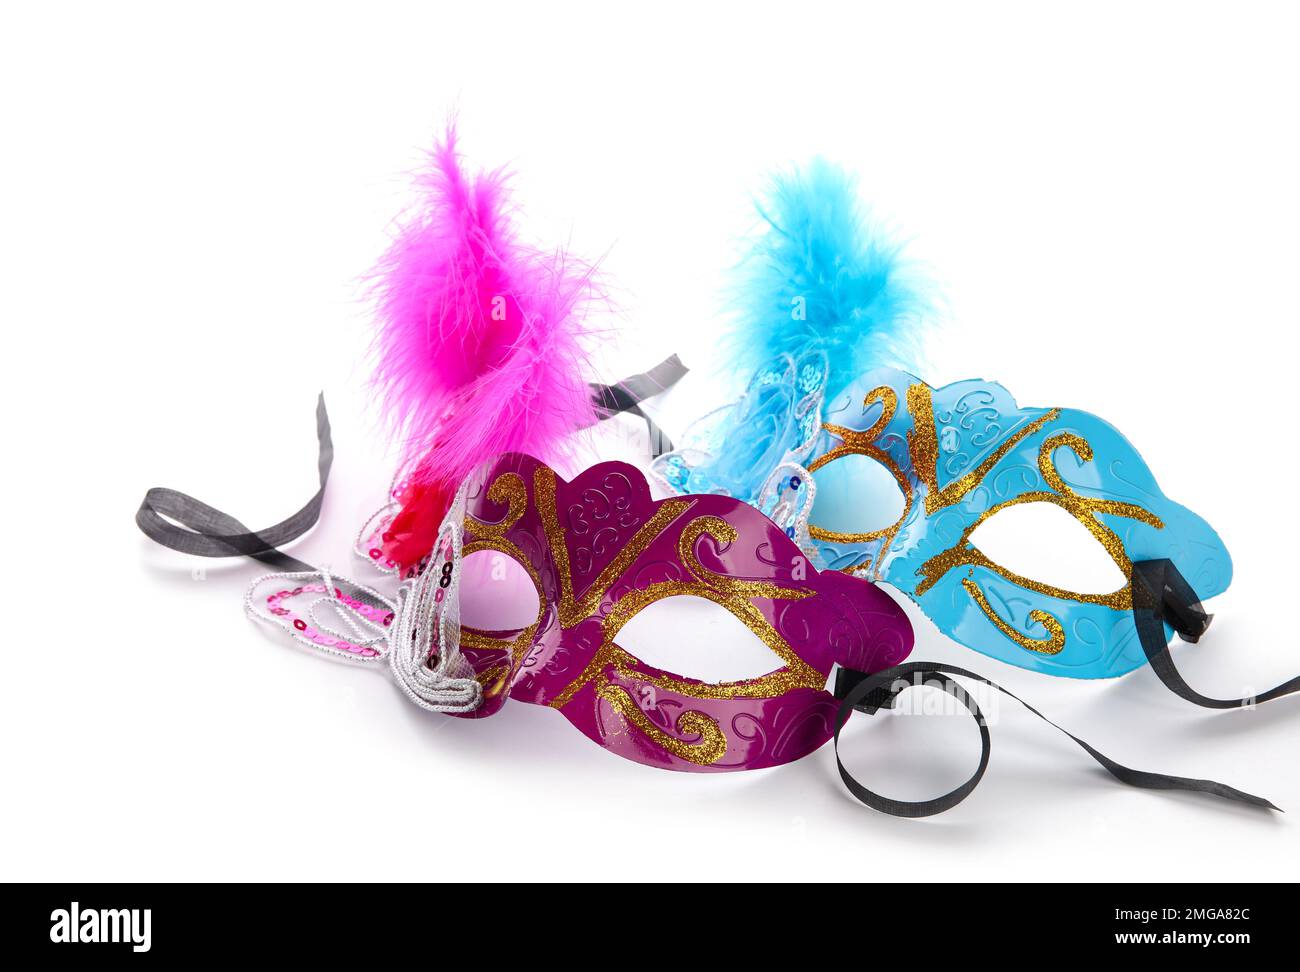 Wunderschöne Karnevalsmasken für die Mardi Gras Feier auf weißem Hintergrund Stockfoto